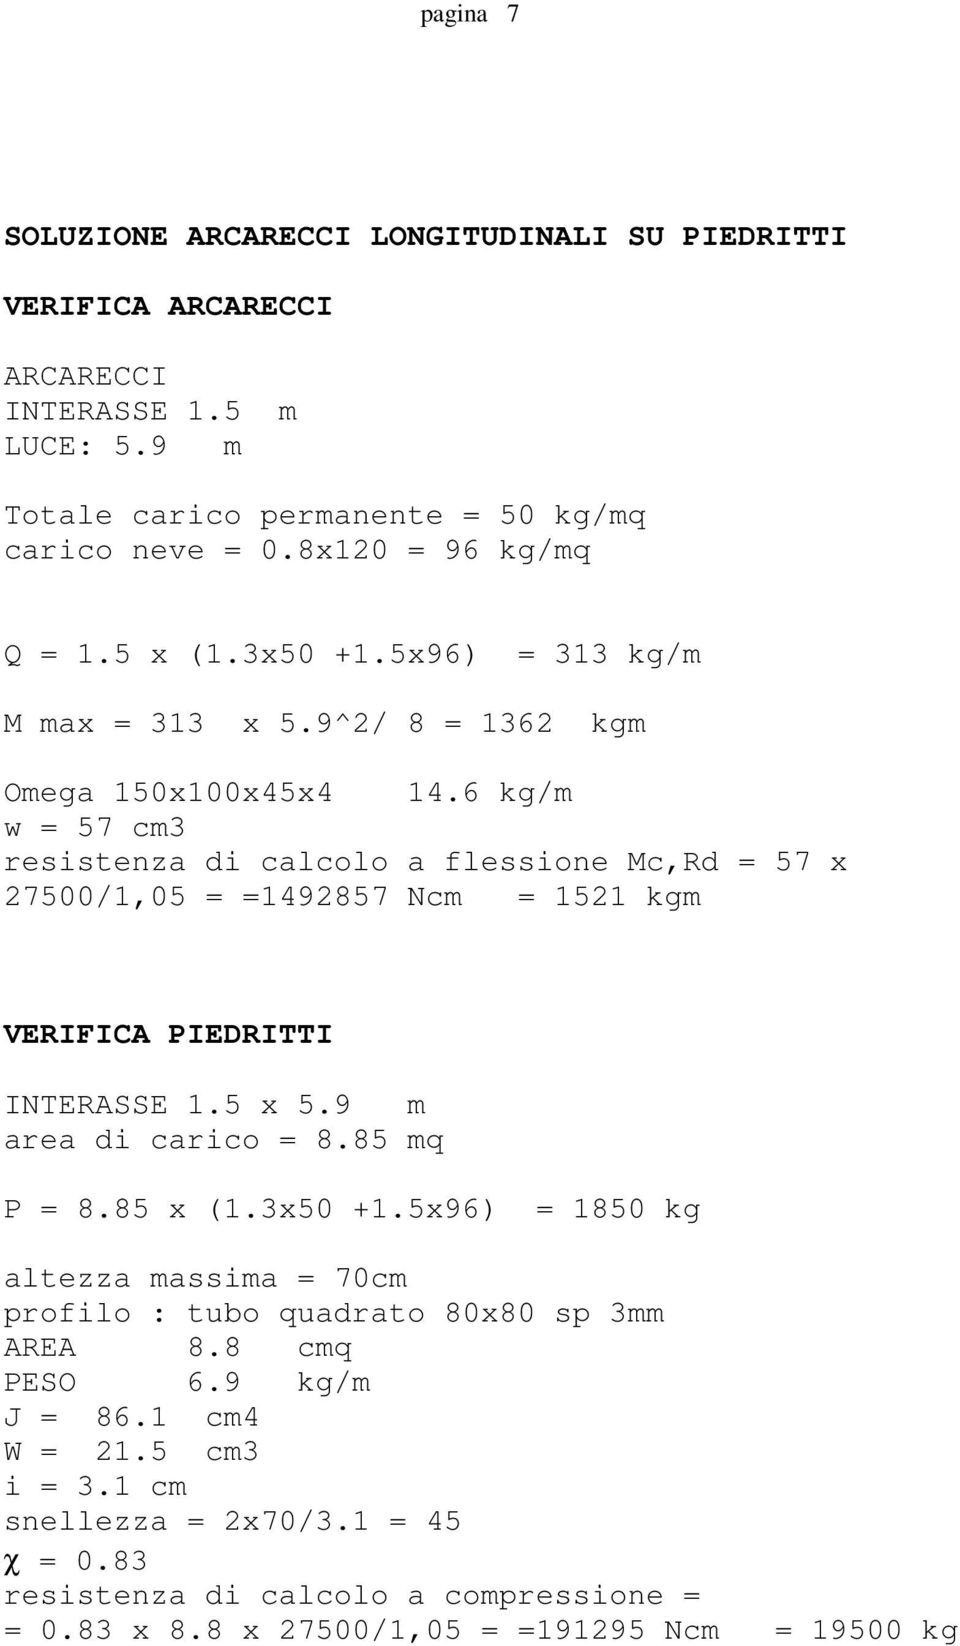 6 kg/m w = 57 cm3 resistenza di calcolo a flessione Mc,Rd = 57 x 27500/1,05 = =1492857 Ncm = 1521 kgm VERIFICA PIEDRITTI INTERASSE 1.5 x 5.9 m area di carico = 8.85 mq P = 8.85 x (1.